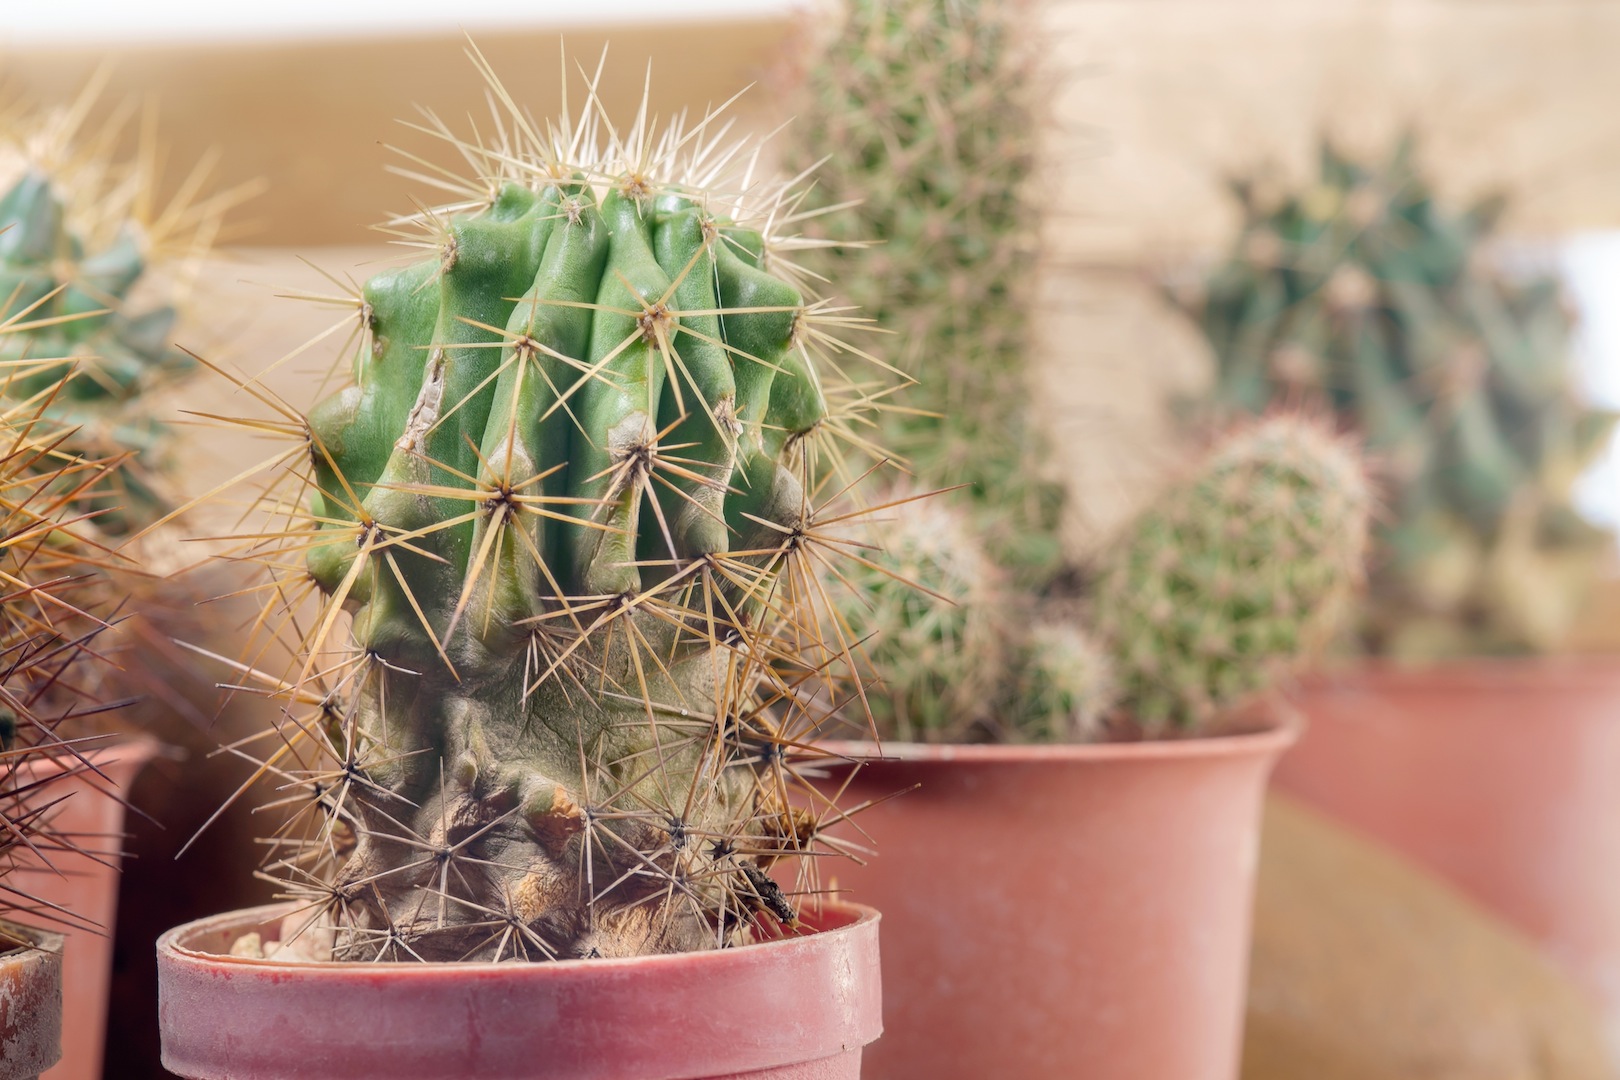 Les cactus - que sont-ils et d'où viennent-ils ?